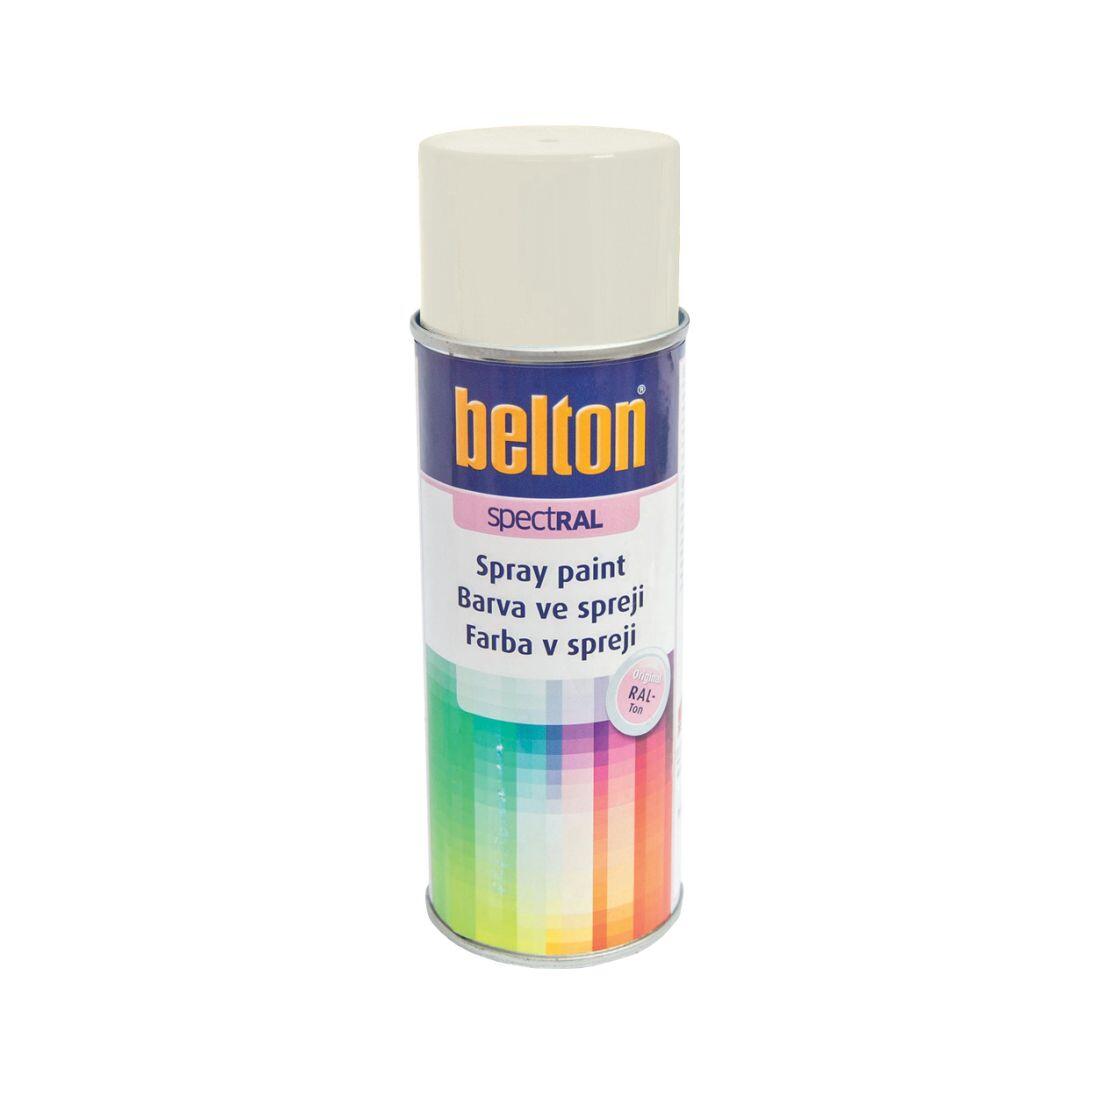 barva ve spreji BELTON RAL 9010, 400ml BÍ 0.31 Kg MAXMIX Sklad14 825130 23